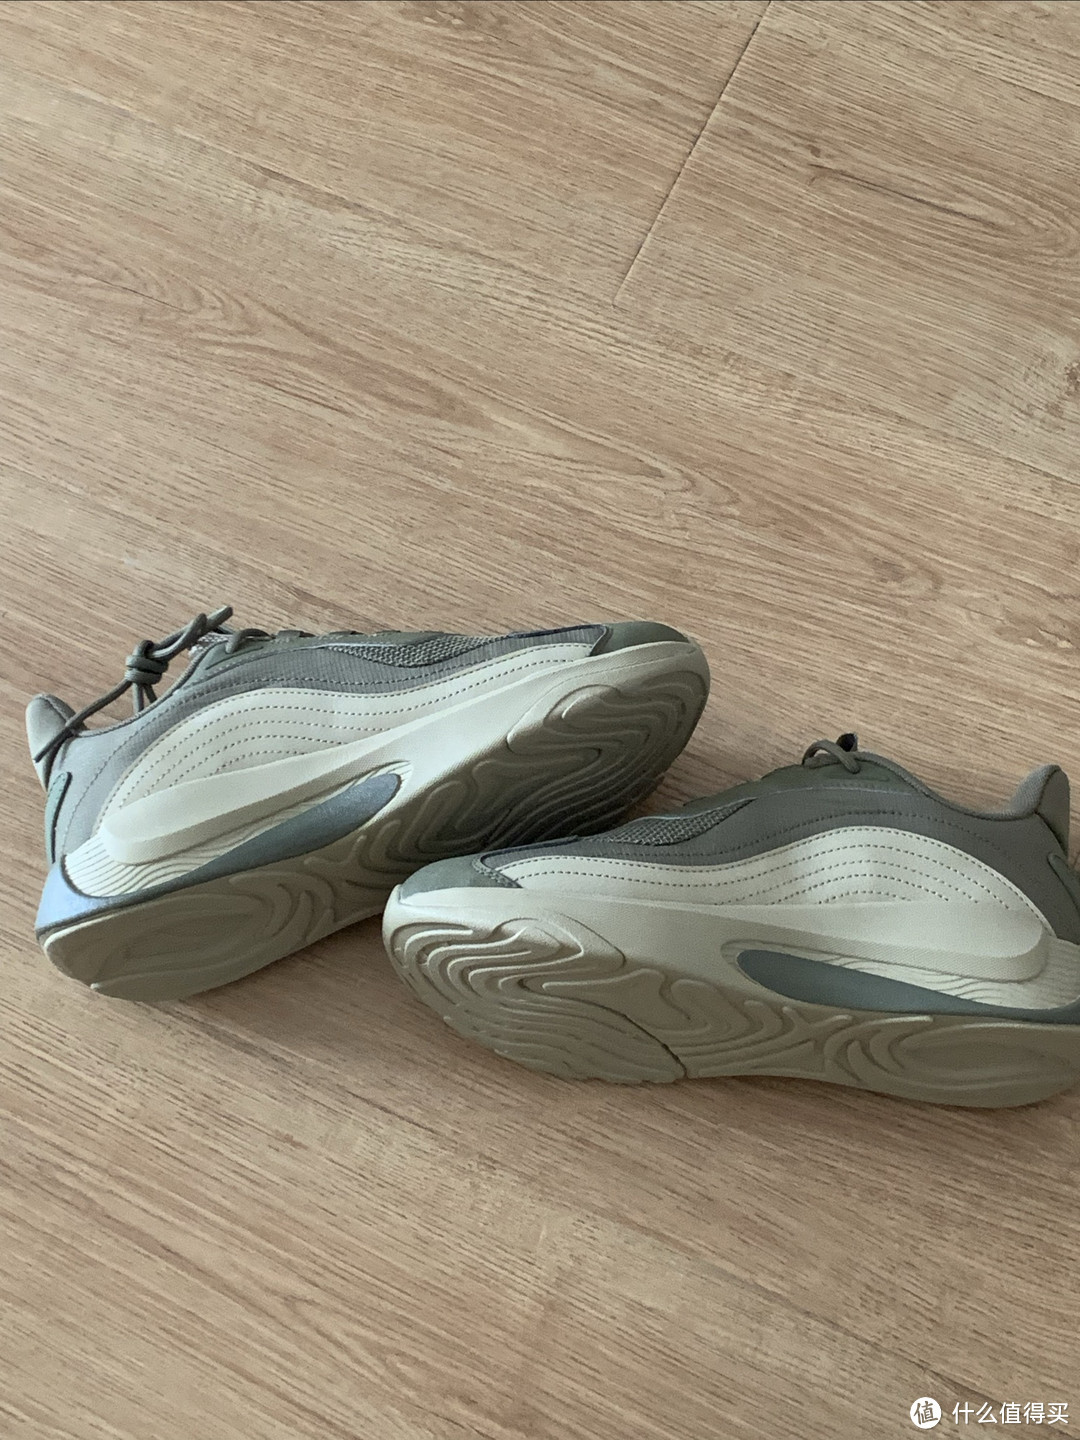 安踏休闲运动鞋跑步运动穿搭十分合适。